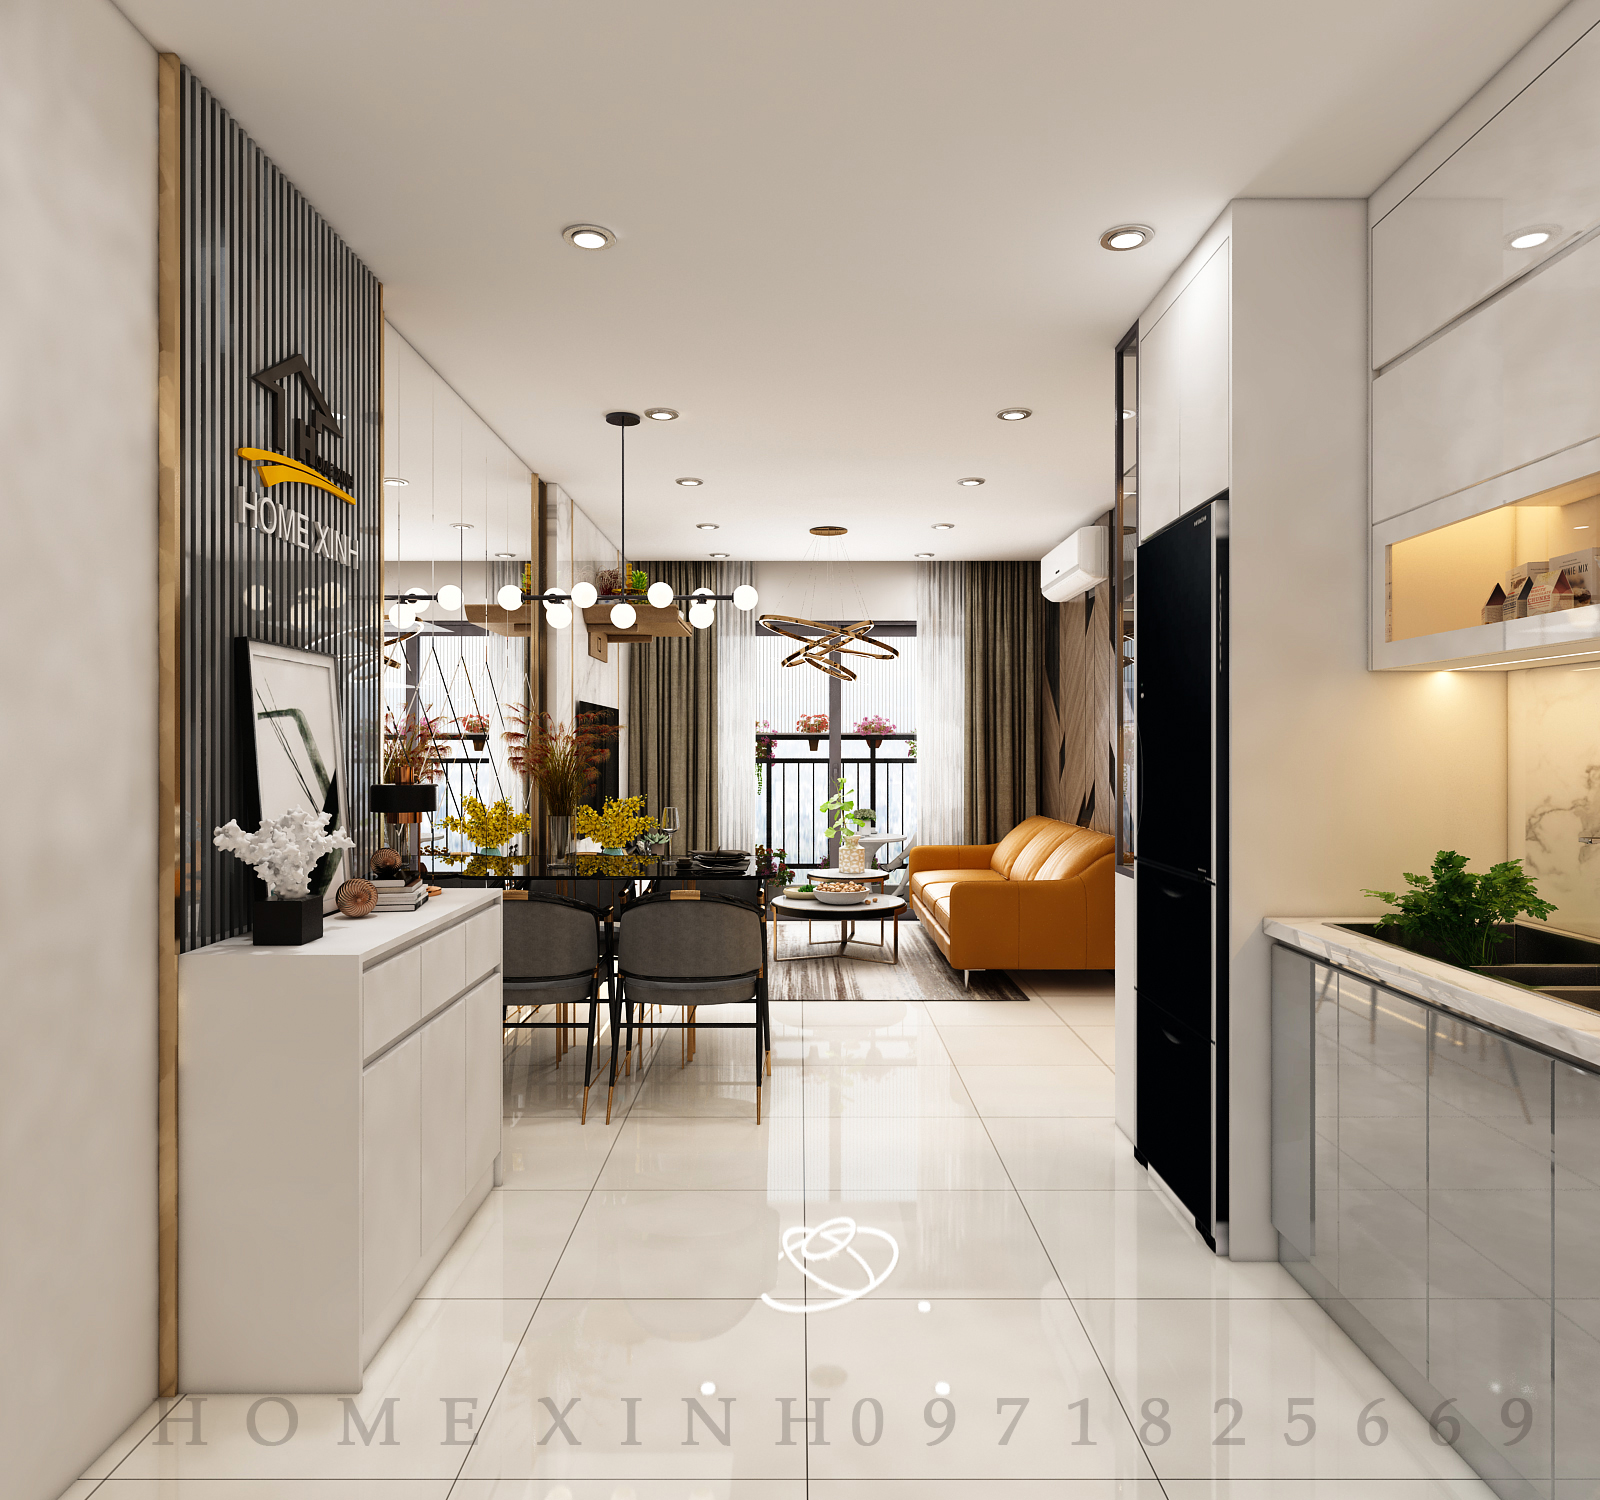 Thiết kế nội thất chung cư tại Hà Nội uy tín, sang trọng, đẳng cấp 7.